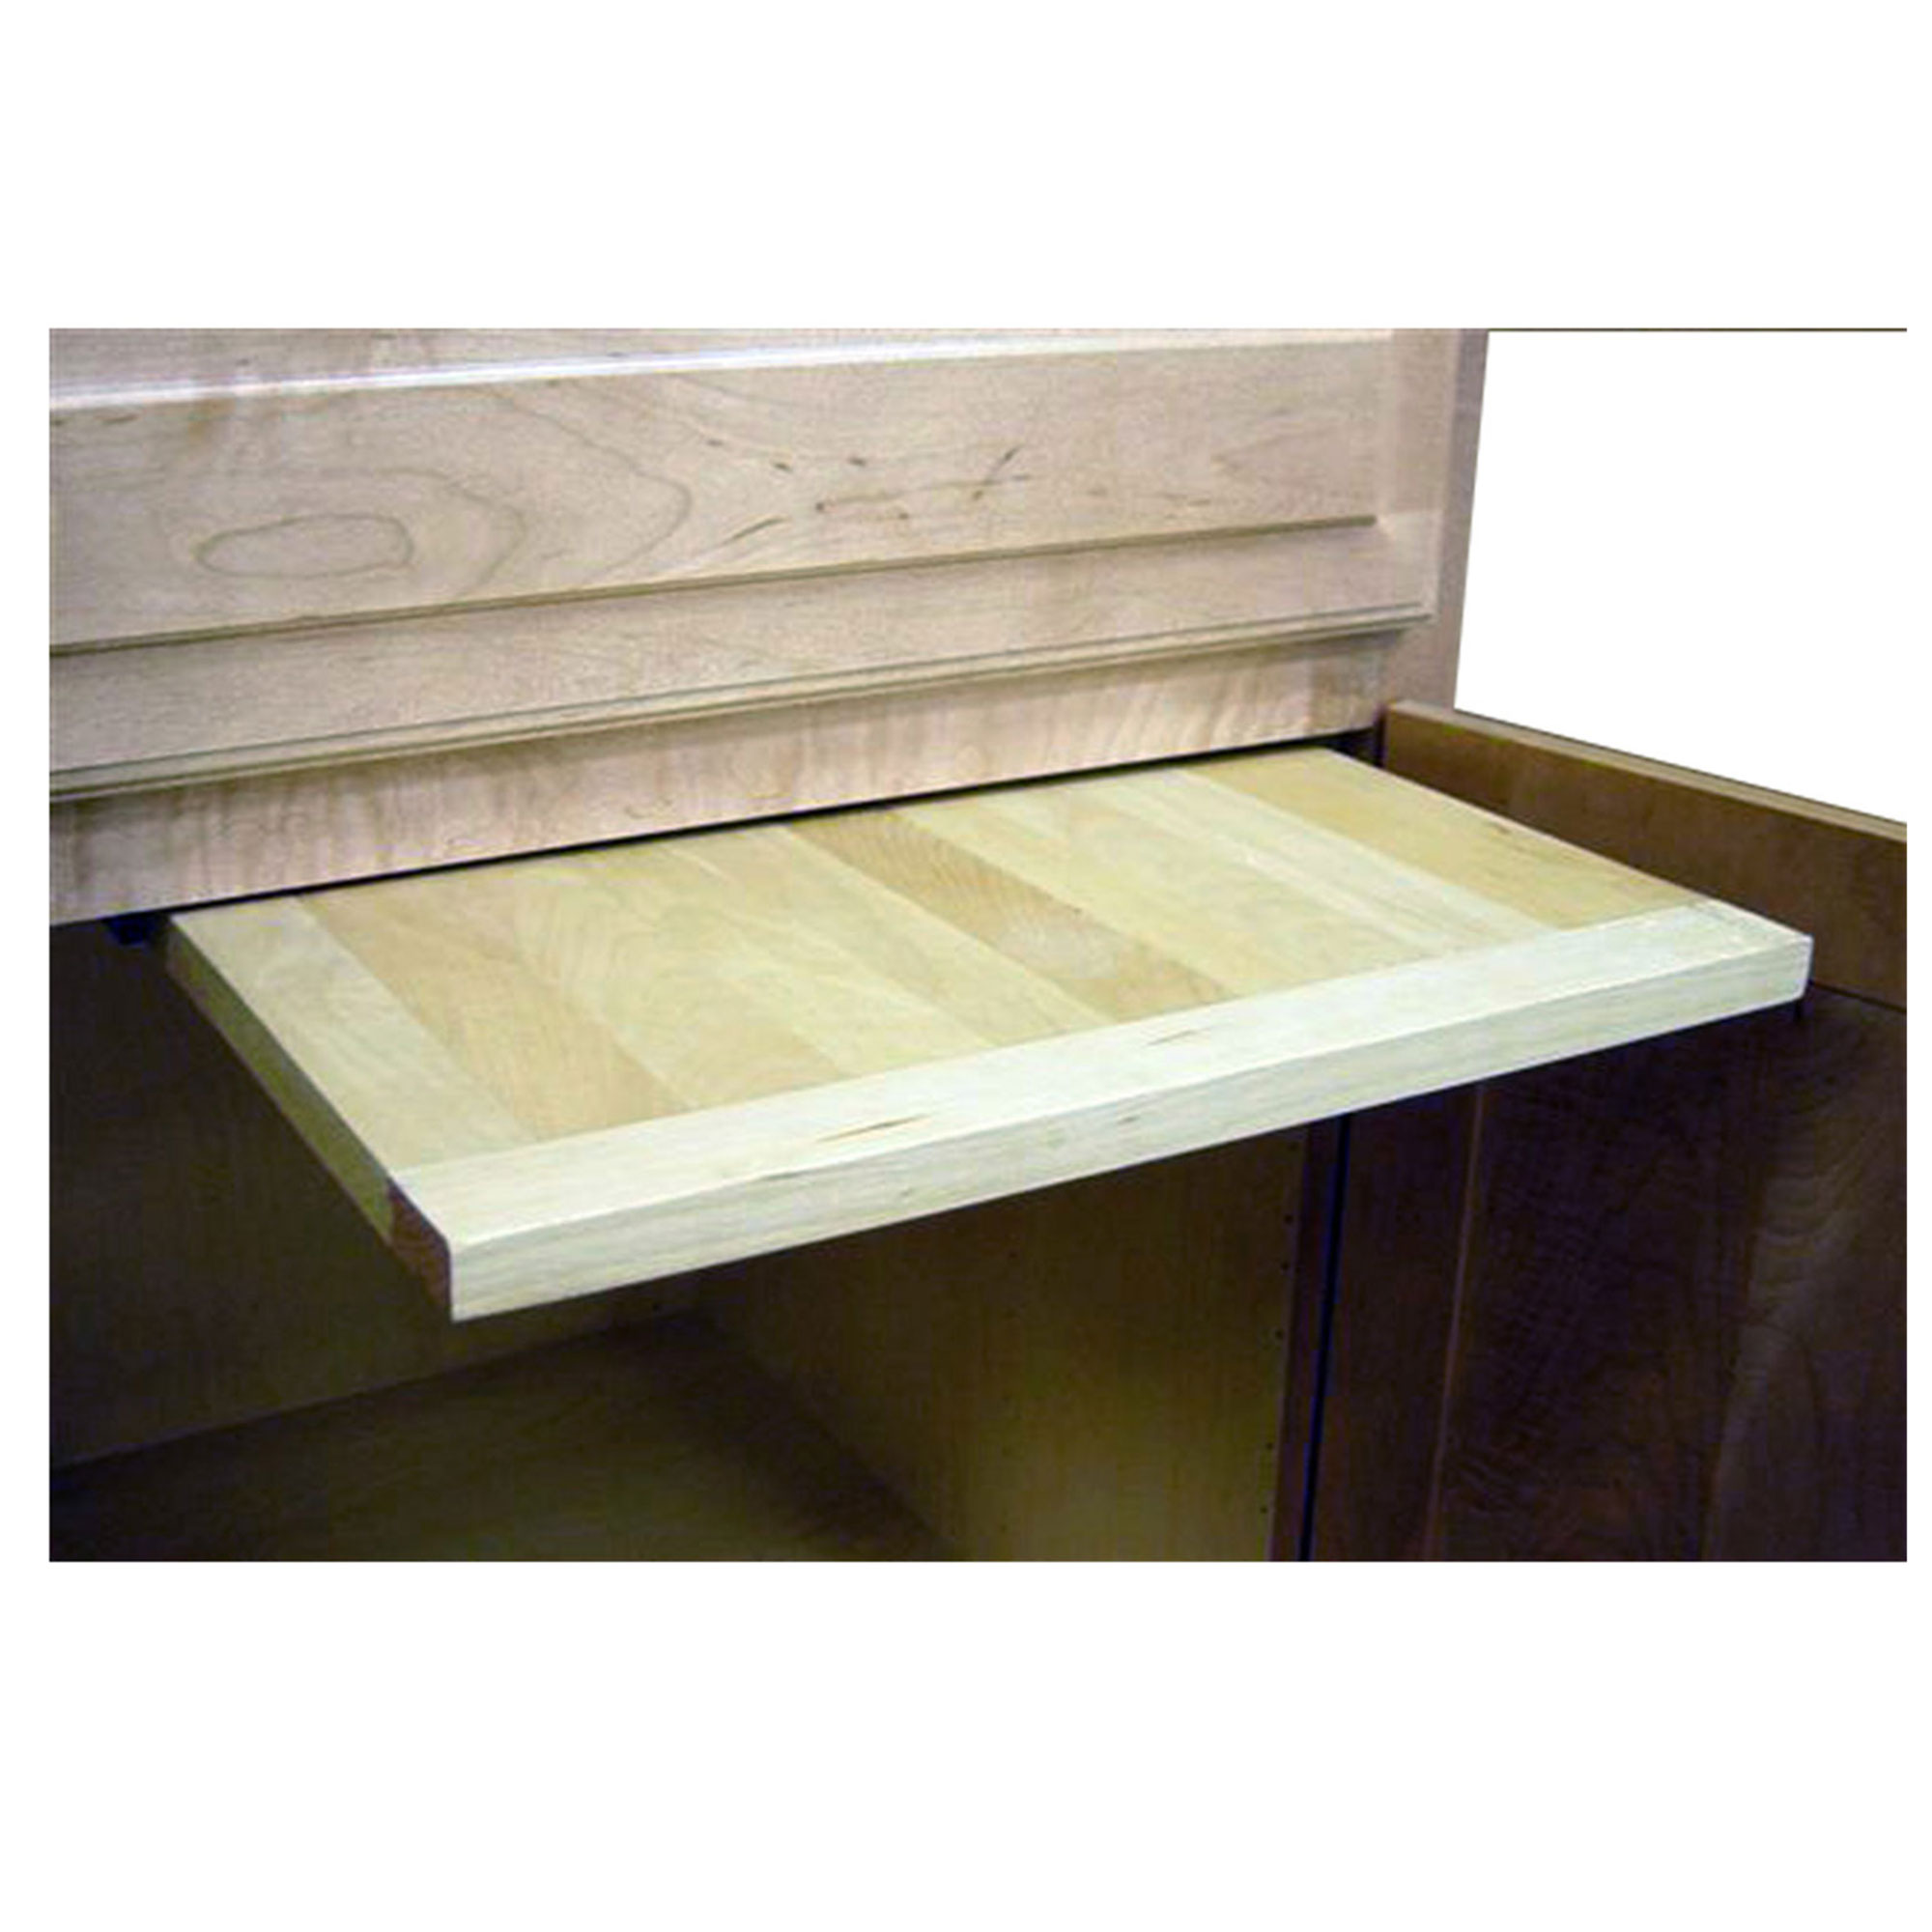 16 X 22 Inch Ez Slide N Store Wood Cutting Board